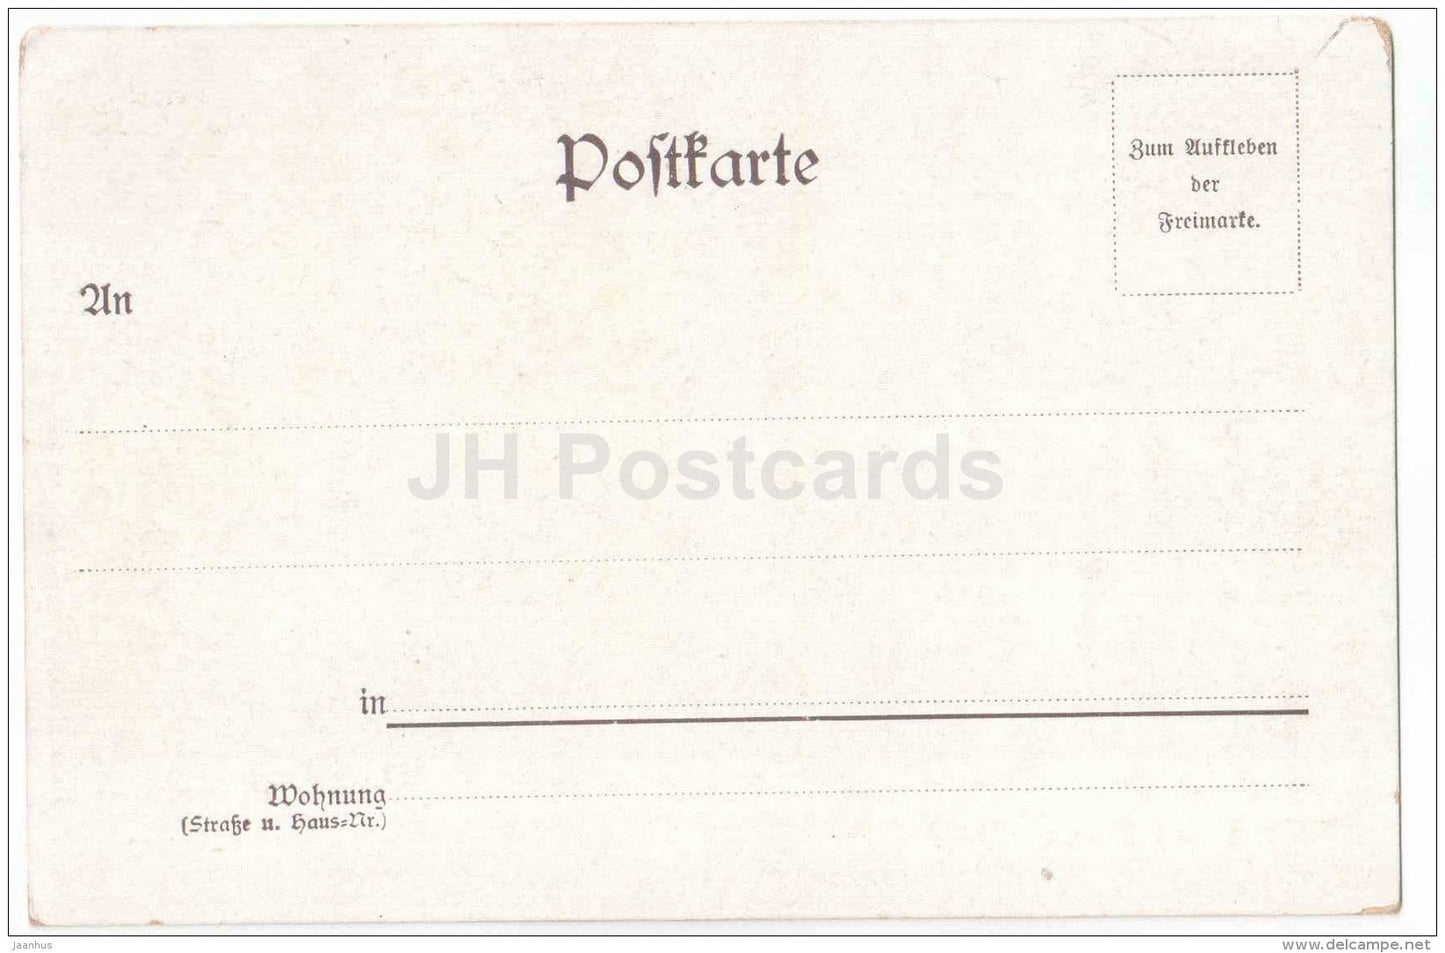 Gruss aus Berlin - Reichstag - Berlin - Germany - old postcard - unused - JH Postcards